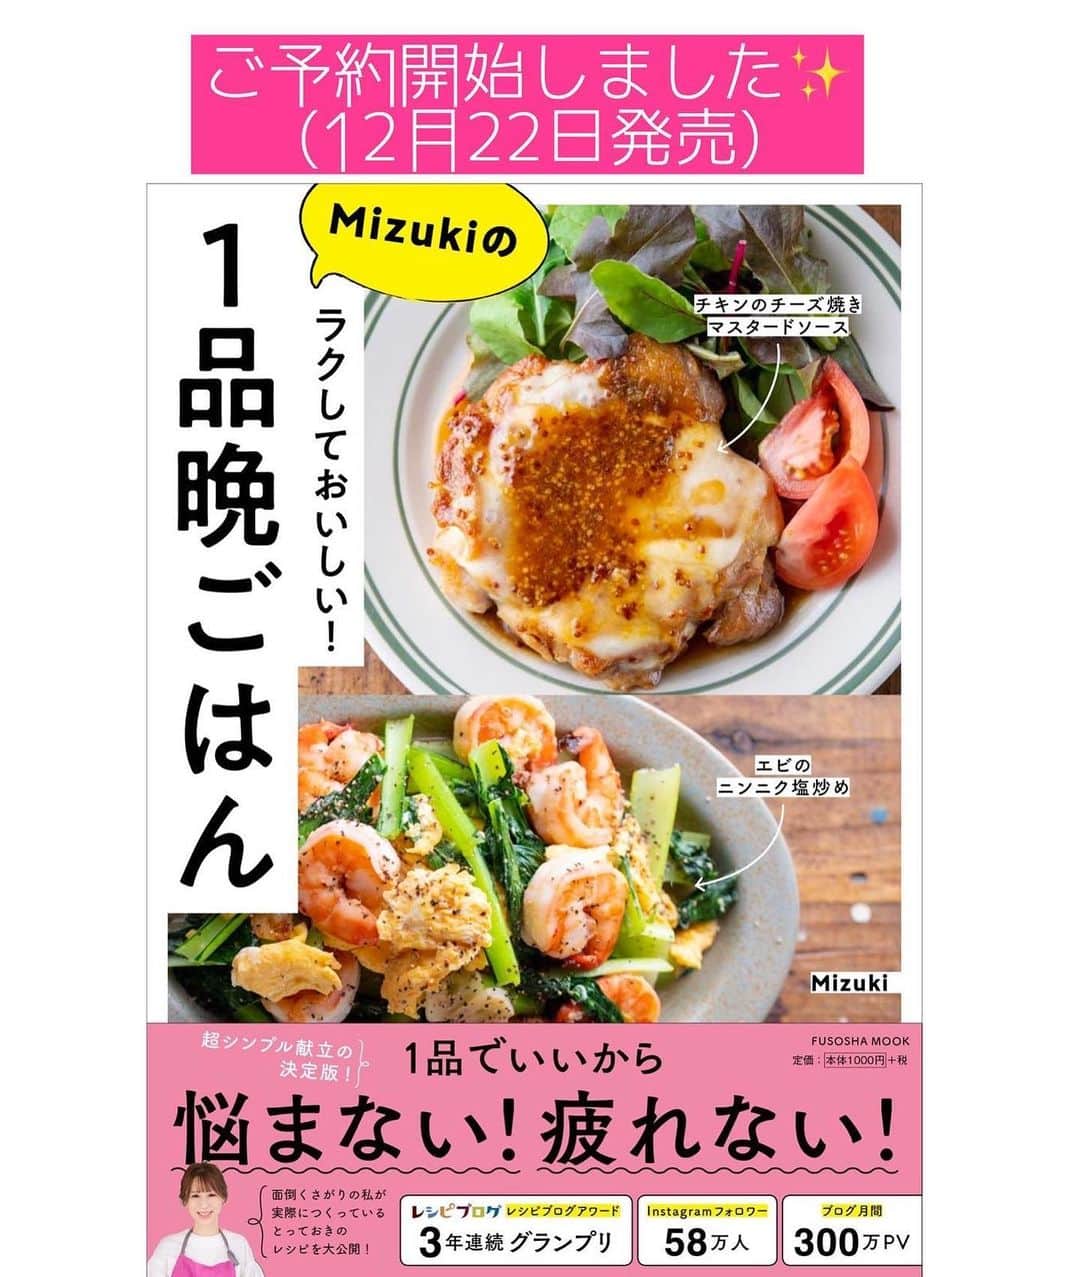 Mizuki【料理ブロガー・簡単レシピ】さんのインスタグラム写真 - (Mizuki【料理ブロガー・簡単レシピ】Instagram)「・﻿ 【#レシピ 】ーーーーーーーーーーーーー﻿ ♡生クリームなし！クラムチャウダー♡﻿ ーーーーーーーーーーーーーーーーーーー﻿ ﻿ ﻿ ﻿ おはようございます(*^^*)﻿ ﻿ 今日はコロコロ野菜たっぷりの﻿ クラムチャウダーのご紹介です♩﻿ ﻿ あさりは缶詰め(水煮)を使って﻿ 手間も時間も大幅カット！﻿ 更に生クリーム不要でお手軽ですよ〜♡﻿ ﻿ ポットパイにしたり、パンにつけたり﻿ パスタにかけるのもおすすめ♩﻿ クリスマスメニューにもぴったりなので﻿ お気軽にお試し下さいね(*^^*)﻿ ﻿ ﻿ ﻿ ＿＿＿＿＿＿＿＿＿＿＿＿＿＿＿＿＿＿＿＿﻿ 【3〜4人分】﻿ あさり水煮缶...1缶(130g)﻿ ベーコン...2枚﻿ じゃがいも...1個﻿ 玉ねぎ...1/2個﻿ 人参...1/2本﻿ バター...15g﻿ 薄力粉...大1.5﻿ ●水...300ml﻿ ●コンソメ...小1/2﻿ ☆牛乳...250ml﻿ ☆粉チーズ...大1﻿ ☆塩こしょう...少々﻿ ﻿ 1.ベーコン、じゃがいも、玉ねぎは1cm角に、人参は5mm角に切る。﻿ 2.鍋にバターを入れて中火で熱し、1を炒める。玉ねぎがしんなりしたら弱火にし、薄力粉を振り入れて1分炒める。﻿ 3.●とあさり缶(汁ごと)を加えて混ぜ、弱めの中火で8分程煮る。(たまに混ぜながら)﻿ 4.野菜が柔らかくなったら☆を加え、混ぜながら沸騰直前まで加熱して火を止める。﻿ ￣￣￣￣￣￣￣￣￣￣￣￣￣￣￣￣￣￣￣￣﻿ ﻿ ﻿ ﻿ 《ポイント》﻿ ♦︎あさり水煮缶は缶汁含めて130gのものを使用しました♩﻿ ♦︎火の通りにくい人参は他の野菜より小さめに切ります♩﻿ ♦︎生クリームを加える場合は一部(100mlくらい)牛乳と置き換えて下さい♩﻿ ﻿ ﻿ ﻿ ﻿ ﻿ ﻿ ﻿ ﻿ ﻿ 📕新刊予約開始しました📕﻿ 【ラクしておいしい！#1品晩ごはん 】﻿ ￣￣￣￣￣￣￣￣￣￣￣￣￣￣￣￣￣﻿ 私たちだってヘトヘトな日がある•••﻿ 毎日何品も作っていられない•••﻿ もうごはんに悩みたくない😢﻿ そう思うことってありませんか？﻿ そんな時、1品ごはんはいかがでしょう？﻿ というご提案です✨﻿ ﻿ ﻿ 【1品ごはん】は﻿ 副菜いらずで全てがシンプル！﻿ ￣￣￣￣￣￣￣￣￣￣￣￣￣￣￣￣￣￣﻿ 一品つくるだけでいいから﻿ 献立を考えなくてよし！﻿ ￣￣￣￣￣￣￣￣￣￣￣￣￣￣￣￣￣￣﻿ 悩まない、疲れない、﻿ 気力や時間がなくてもなんとかなる！﻿ ￣￣￣￣￣￣￣￣￣￣￣￣￣￣￣￣￣￣﻿ そんな頼りになる﻿ 便利なお助けごはんです☺️💕﻿ (ハイライトに🔗貼っています✨)﻿ ￣￣￣￣￣￣￣￣￣￣￣￣￣￣￣￣￣﻿ ﻿ ﻿ ﻿ ﻿ ﻿ ⭐️発売中⭐️﻿ ＿＿＿＿＿＿＿＿＿＿＿＿＿＿＿＿＿＿﻿ しんどくない献立、考えました♩﻿ \15分でいただきます/﻿ 📕Mizukiの2品献立 📕﻿ ﻿ 和食をもっとカジュアルに♩﻿ \毎日のごはんがラクになる/﻿ 📘Mizukiの今どき和食 📘﻿ ﻿ ホケミレシピの決定版♩﻿ \はじめてでも失敗しない/﻿ 📙ホットケーキミックスのお菓子 📙﻿ ﻿ NHKまる得マガジンテキスト☆﻿ ホットケーキミックスで﻿ 📗絶品おやつ&意外なランチ📗﻿ ￣￣￣￣￣￣￣￣￣￣￣￣￣￣￣￣￣￣﻿ ﻿ ﻿ ﻿ ＿＿＿＿＿＿＿＿＿＿＿＿＿＿＿＿＿＿﻿ レシピを作って下さった際や﻿ レシピ本についてのご投稿には﻿ タグ付け( @mizuki_31cafe )して﻿ お知らせいただけると嬉しいです😊💕﻿ ￣￣￣￣￣￣￣￣￣￣￣￣￣￣￣￣￣￣﻿ ﻿ ﻿ ﻿ ﻿ #クラムチャウダー#クリスマス#牛乳#スープ#Mizuki#簡単レシピ#時短レシピ#節約レシピ#料理#フーディーテーブル#マカロニメイト#おうちごはん#デリスタグラマー#料理好きな人と繋がりたい#食べ物#料理記録#おうちごはんlover#写真好きな人と繋がりたい#foodpic#cooking#recipe#lin_stagrammer#foodporn#yummy#f52grams#クラムチャウダーm」12月13日 6時59分 - mizuki_31cafe